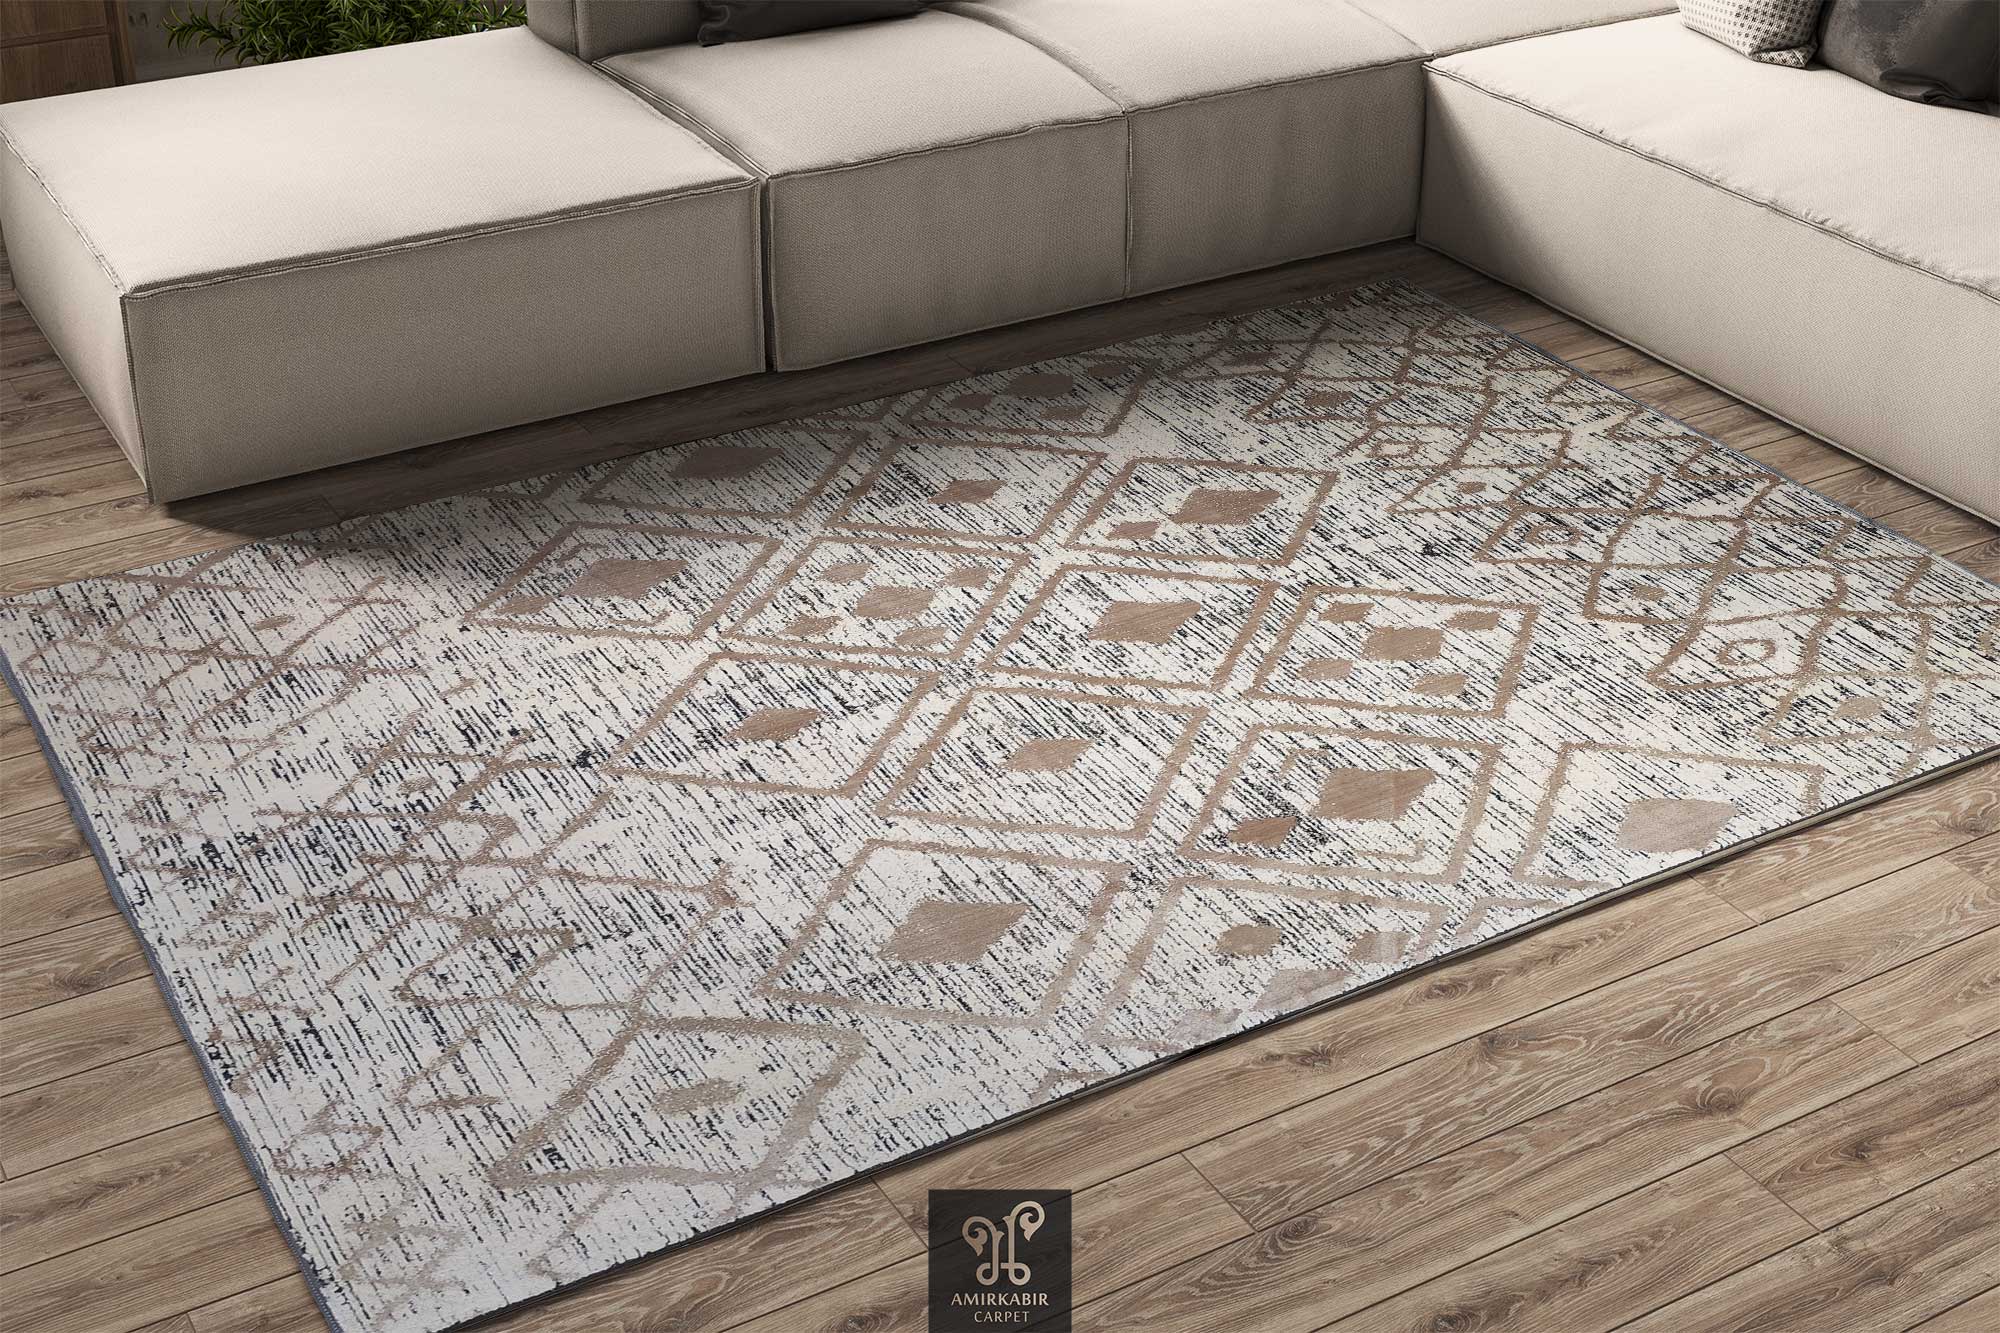 Vintage 400 reeds carpet -1400 Density RUG - Modern Carpet - Harmony Carpet 1194 Beige